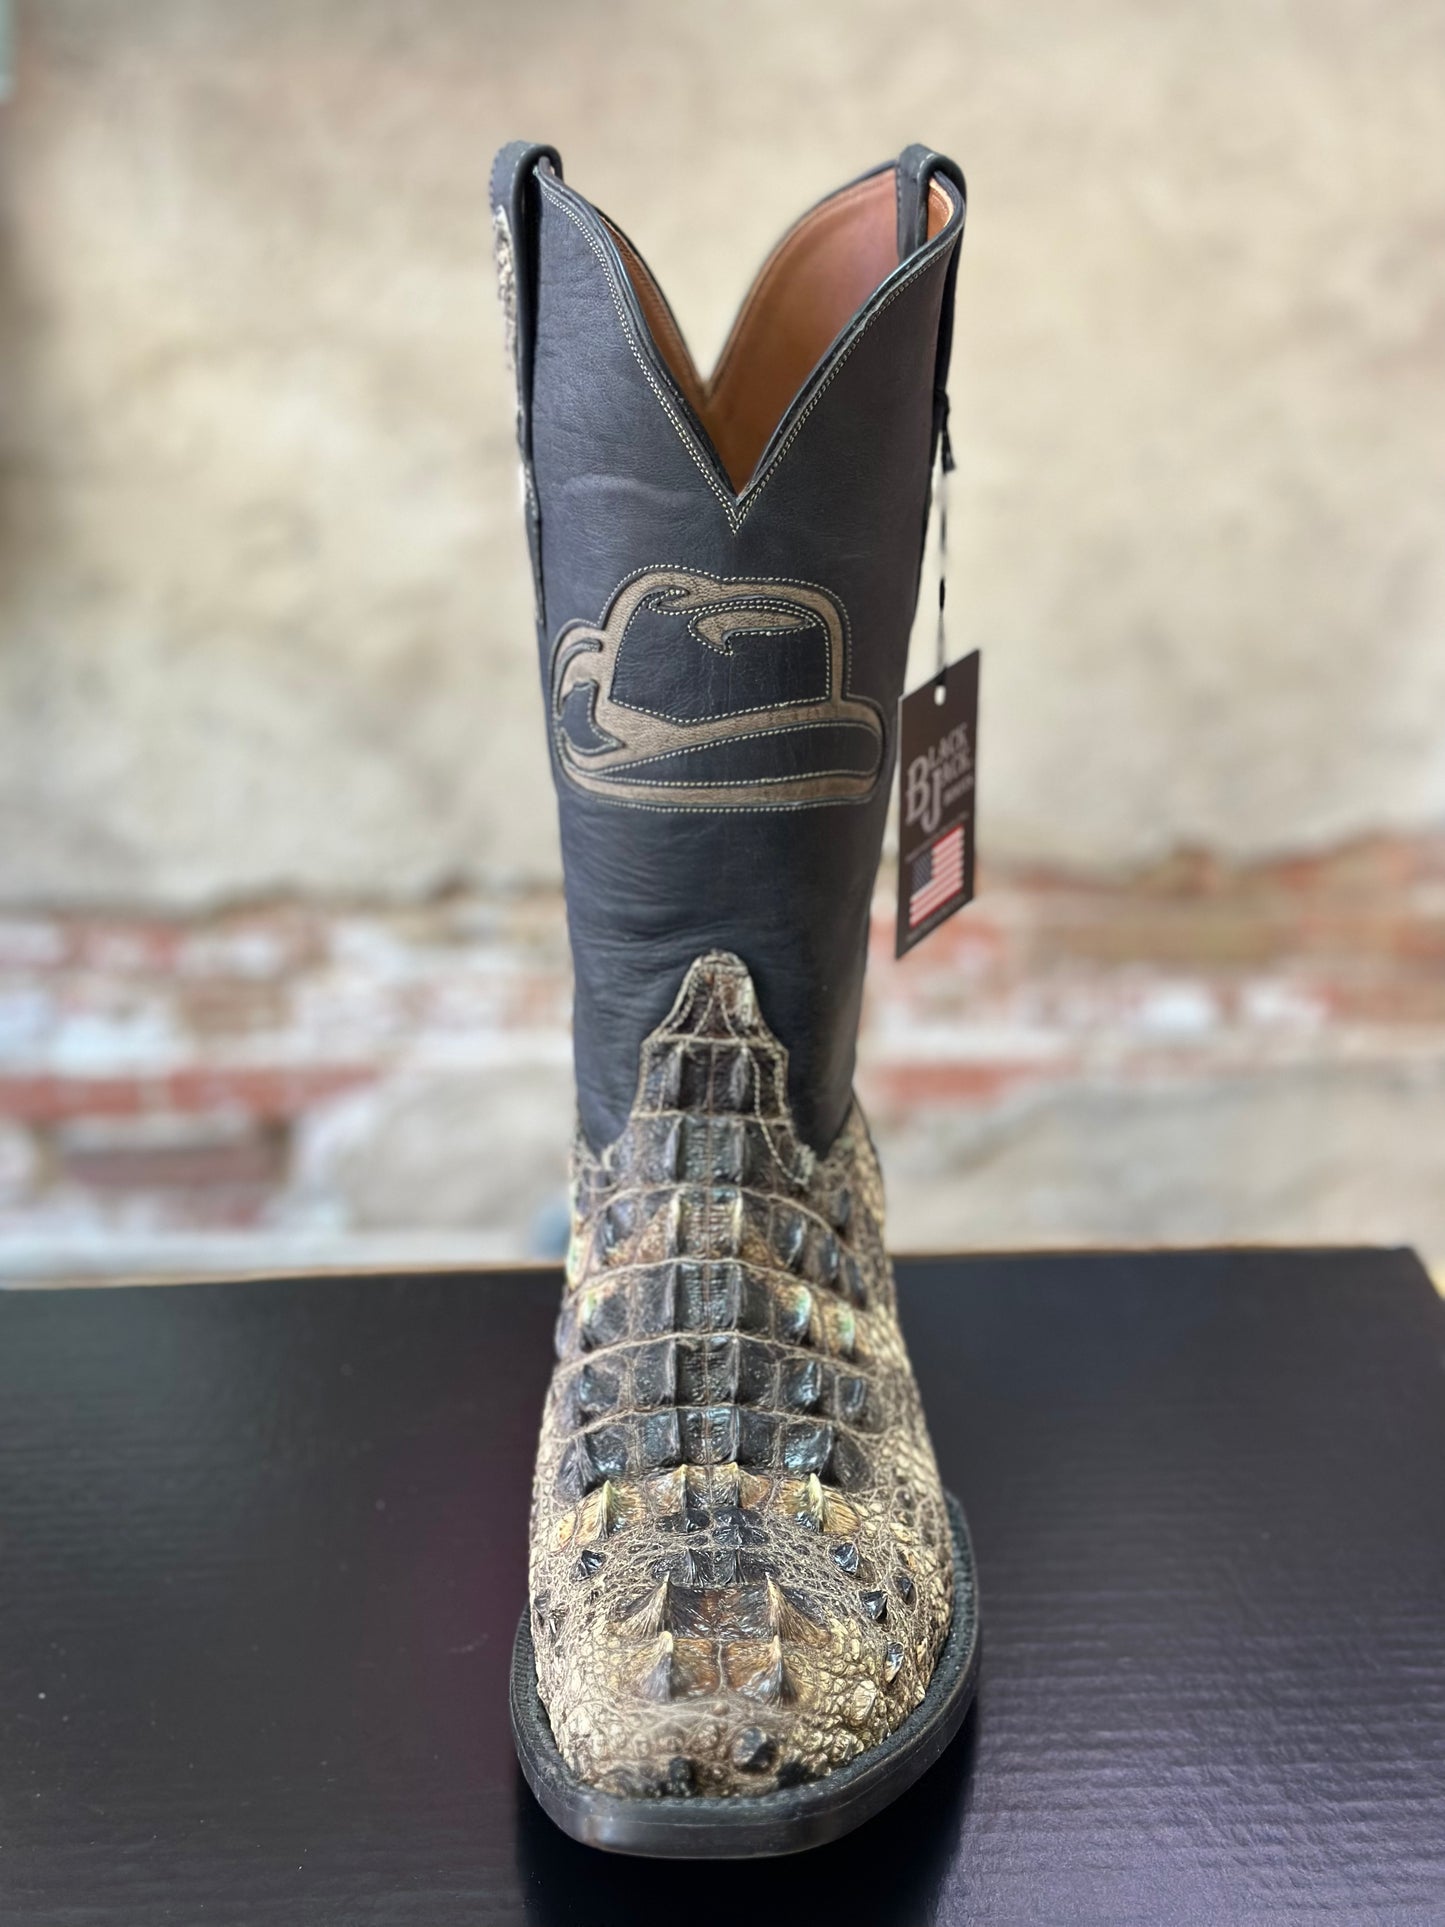 Black Jack Natural Alligator Boots (Hornback)